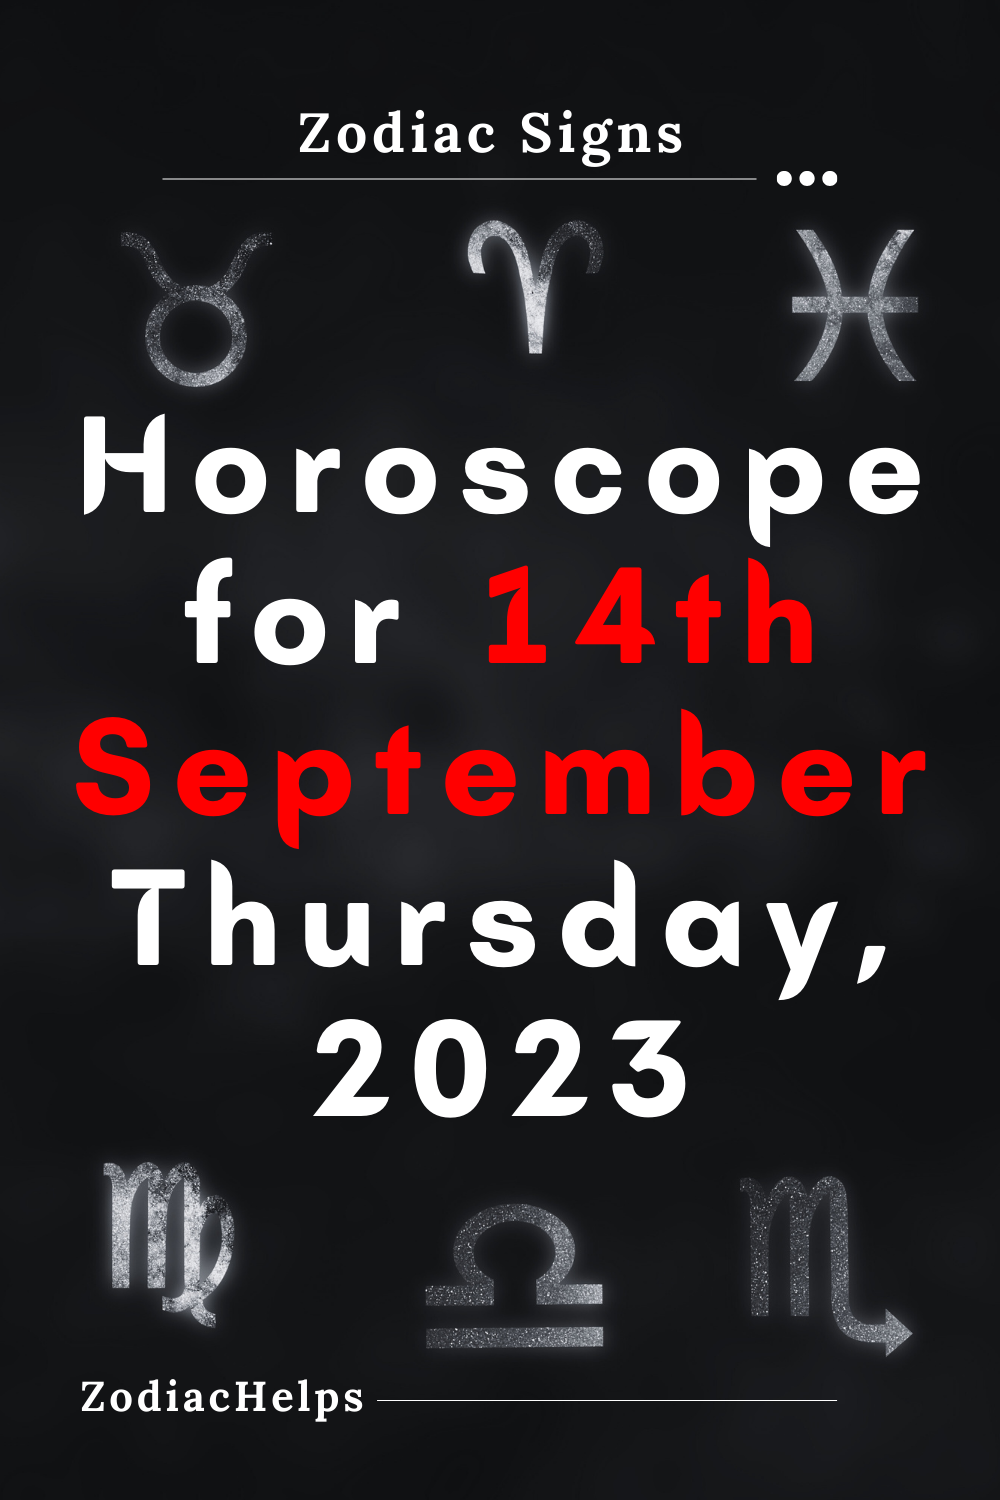 Horoscope for 14th September Thursday, 2023